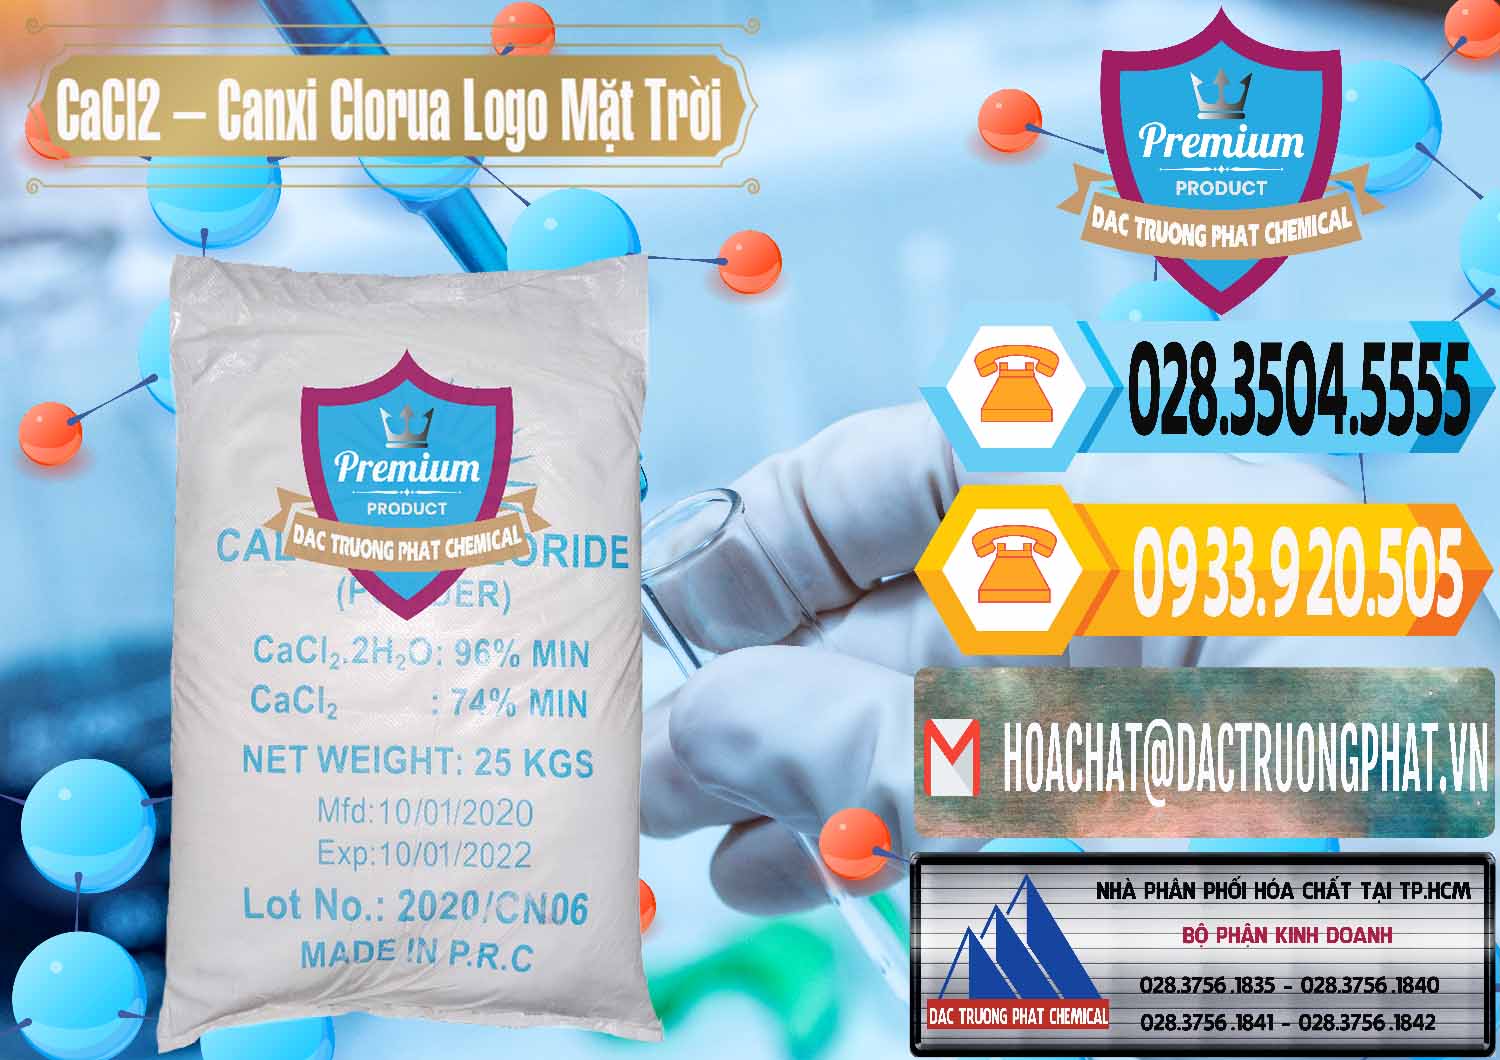 Nơi chuyên cung ứng và bán CaCl2 – Canxi Clorua 96% Logo Mặt Trời Trung Quốc China - 0041 - Phân phối & cung cấp hóa chất tại TP.HCM - hoachattayrua.net